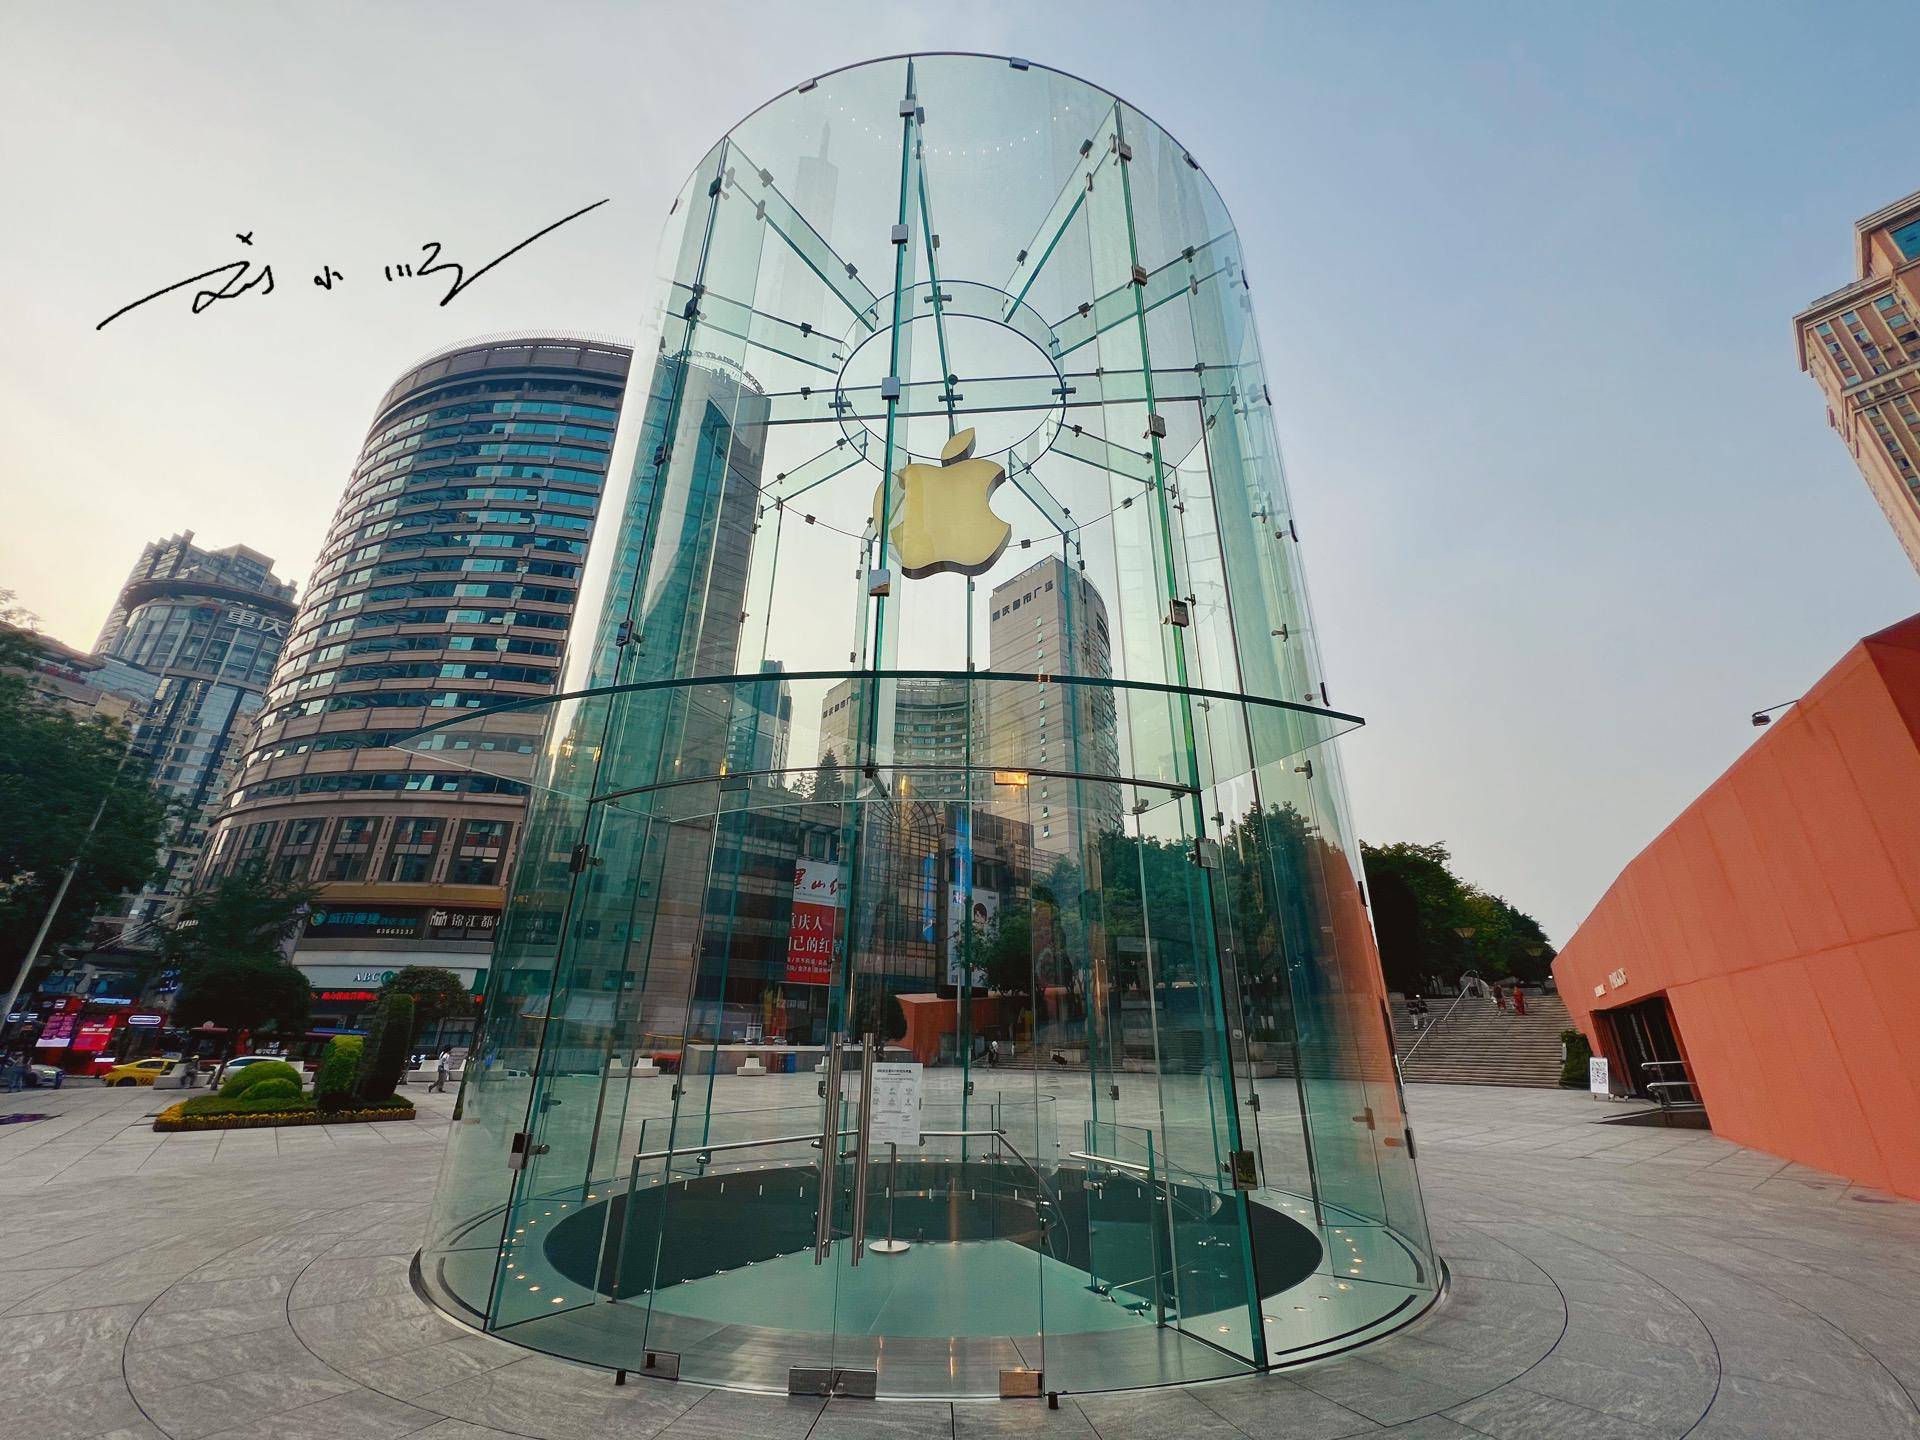 原创重庆有家网红苹果专卖店玻璃入口吸引眼球却被批评是模仿